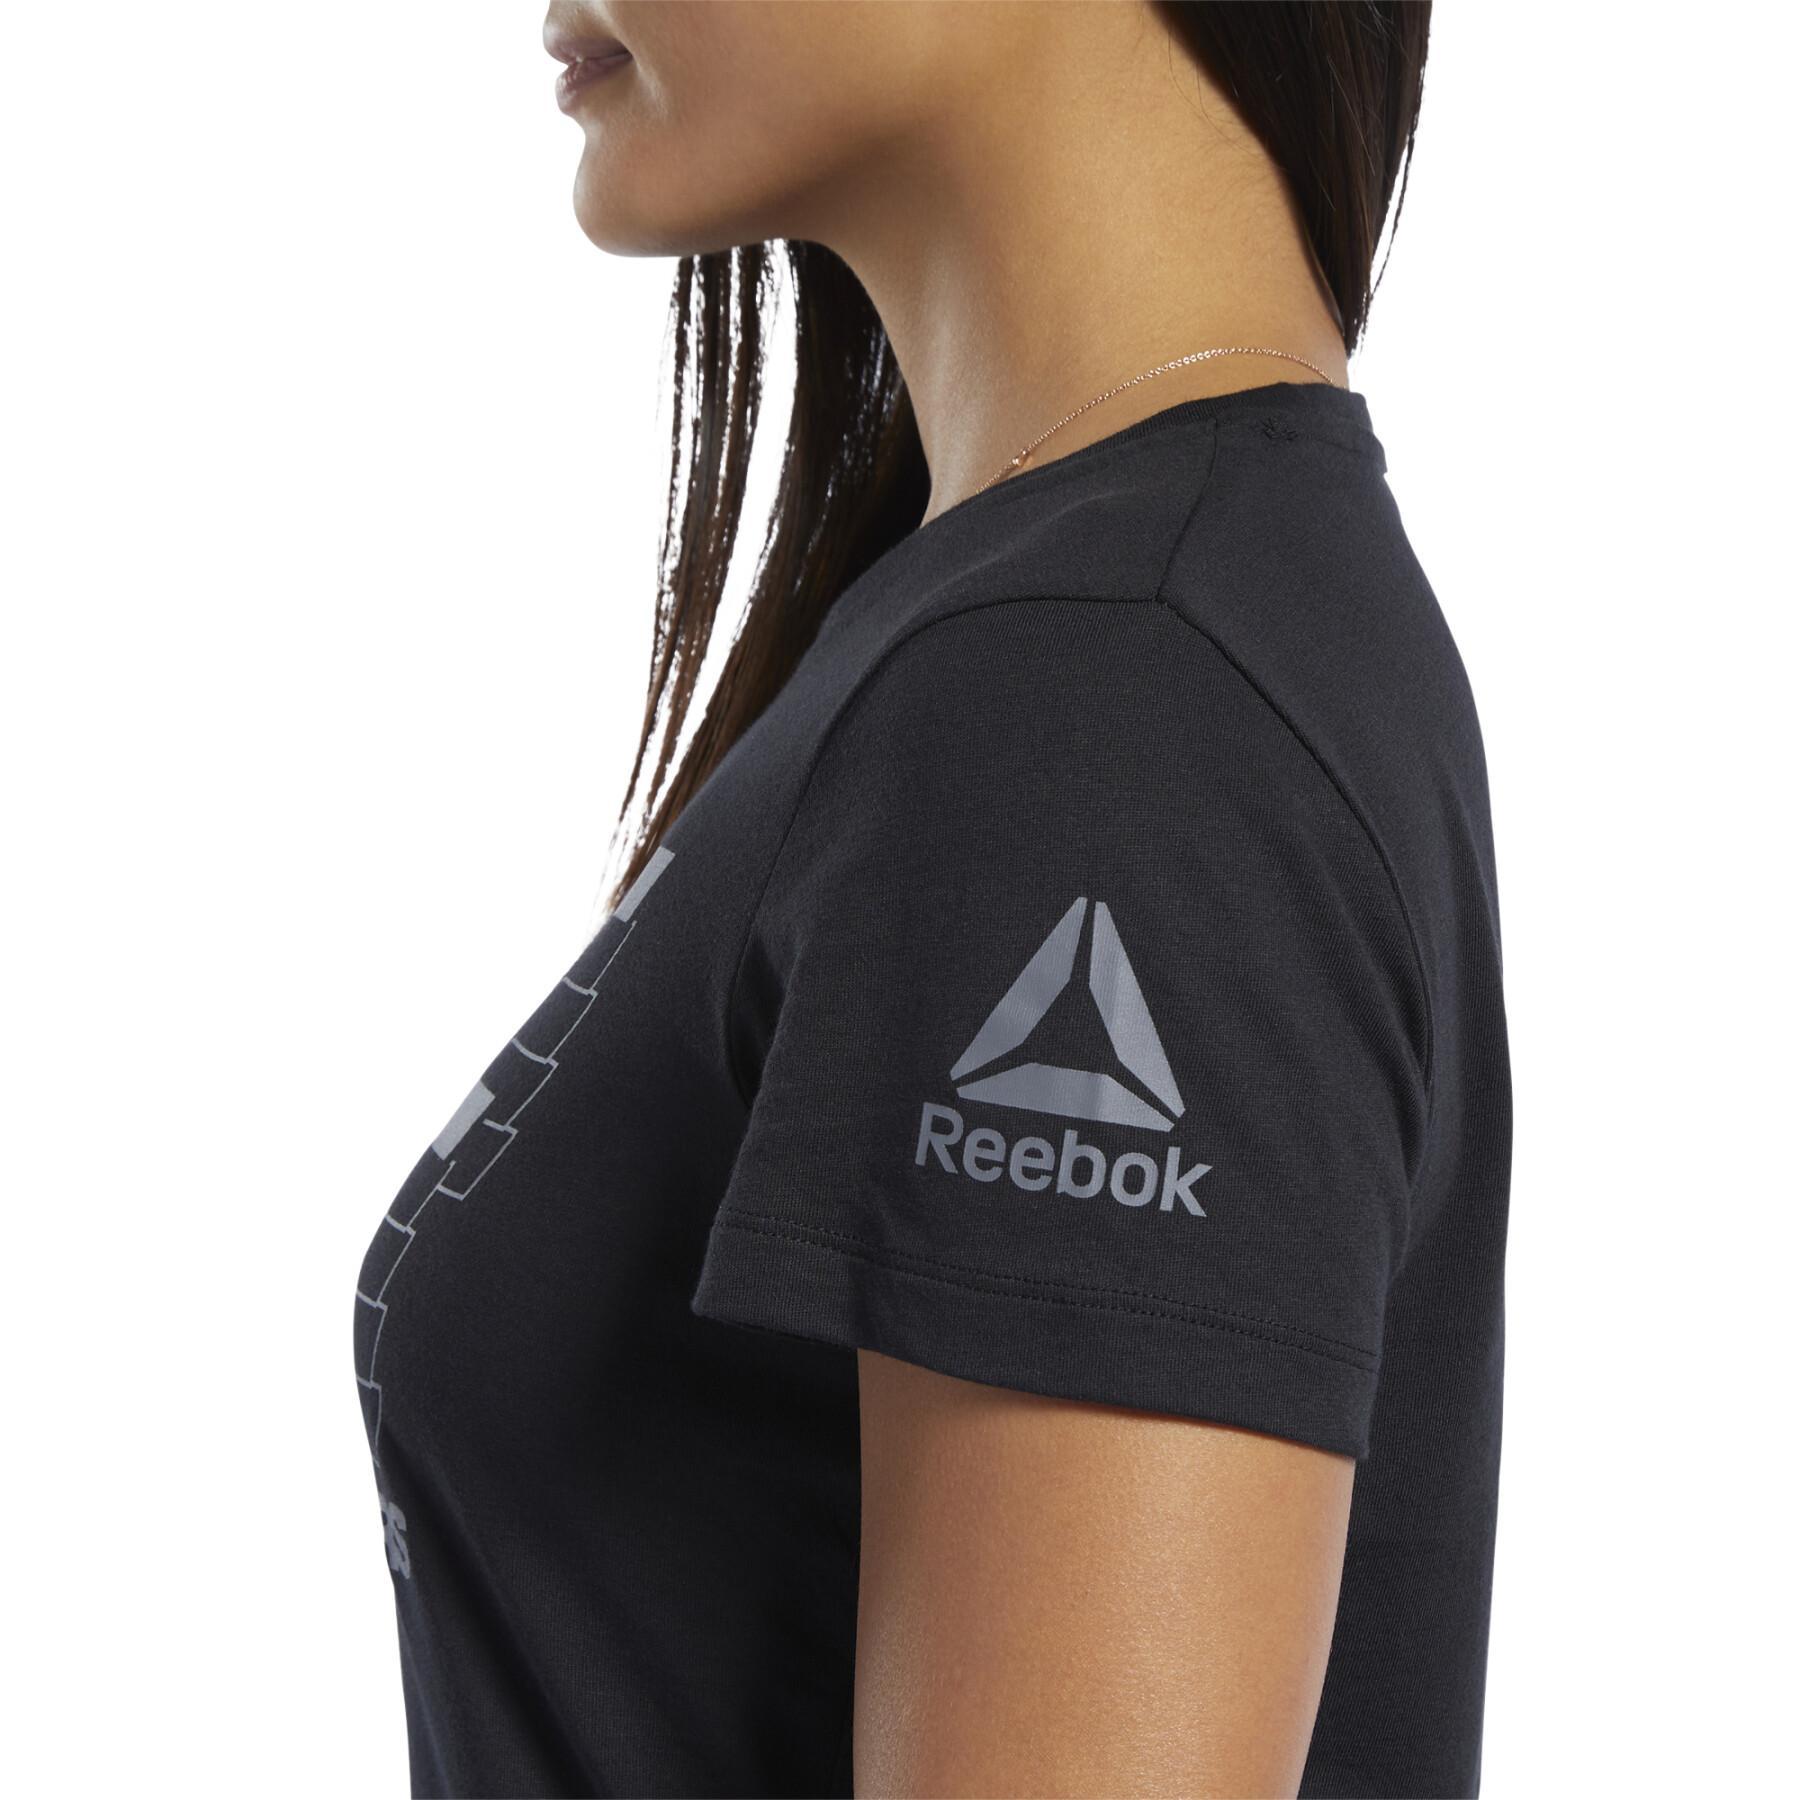 Frauen-T-Shirt Reebok UFC FG Logo